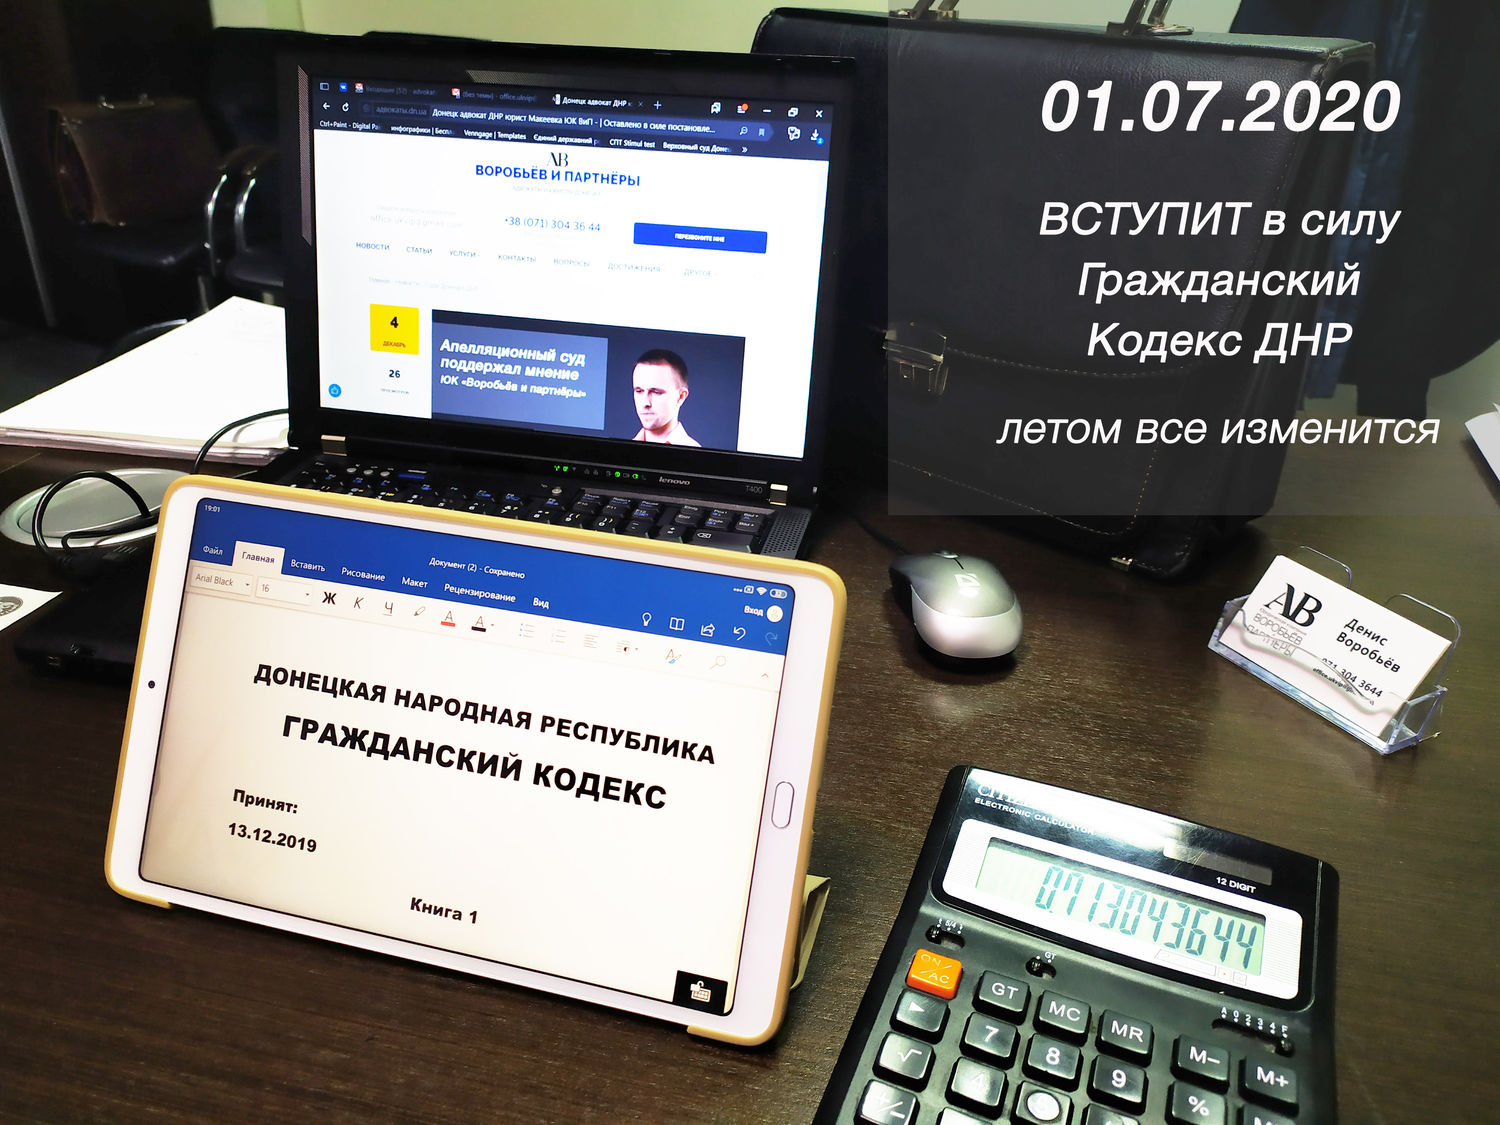 11 января 2020 года ЮК Воробьёв и партнёры расскажет о НОВОМ Гражданском кодексе ДНР